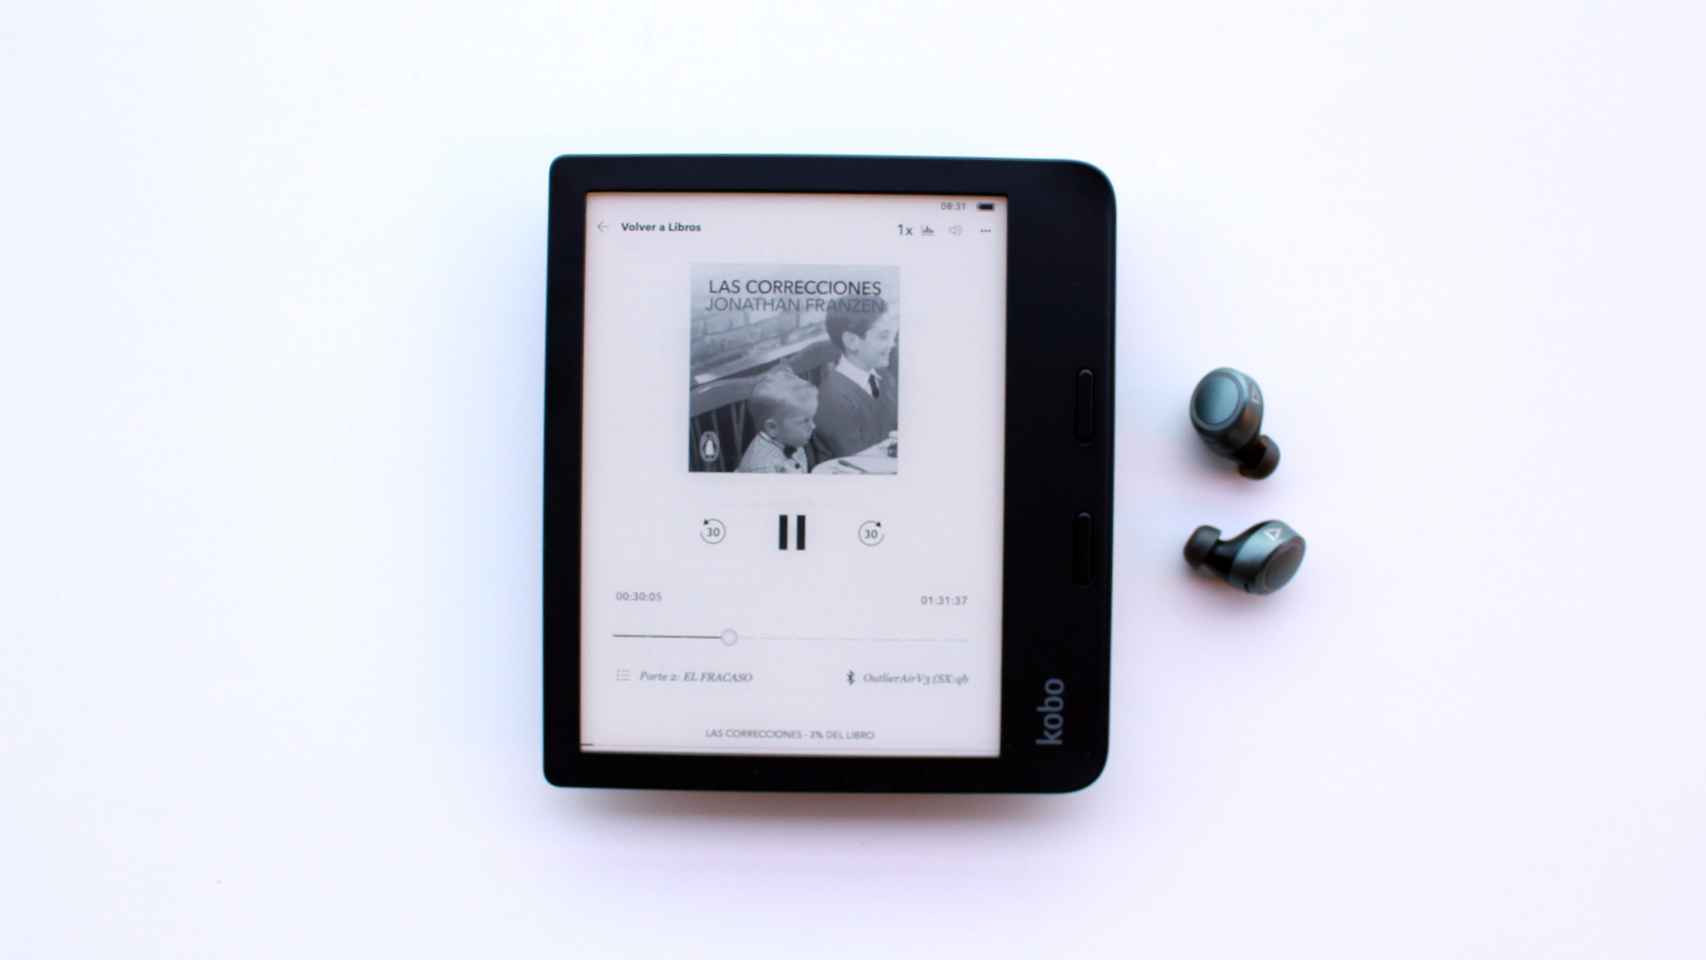 Libros electrónicos de Kobo permiten escuchar audiolibros.